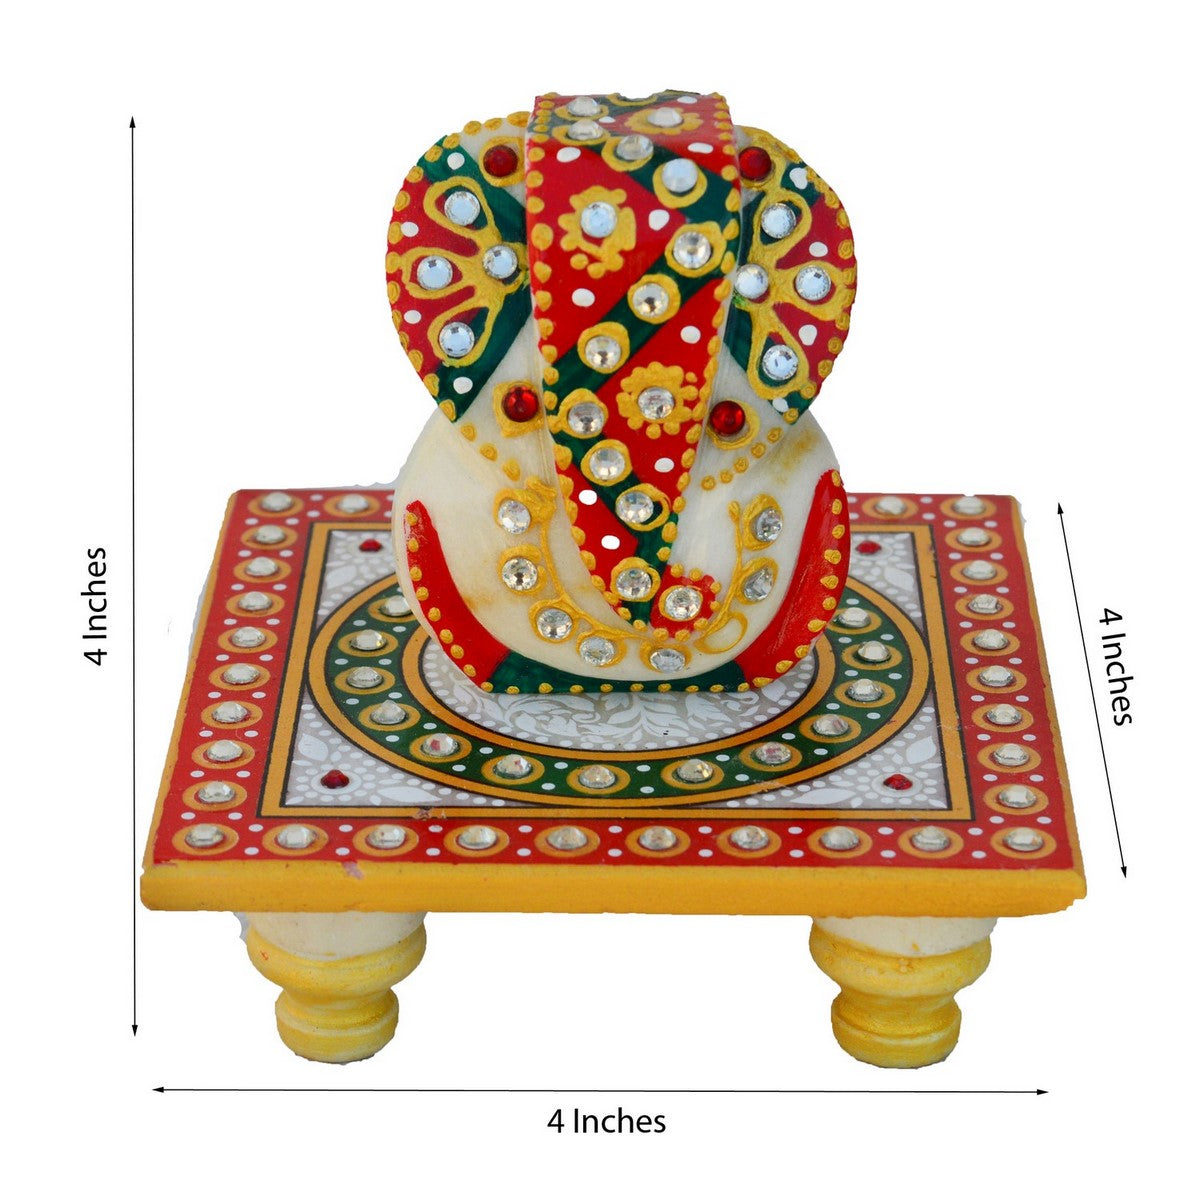 Designer Peacock Rakhi with Lord Ganesha on Kundan Studded Marble Chowki and Roli Tikka Matki, Best Wishes Greeting Card 1